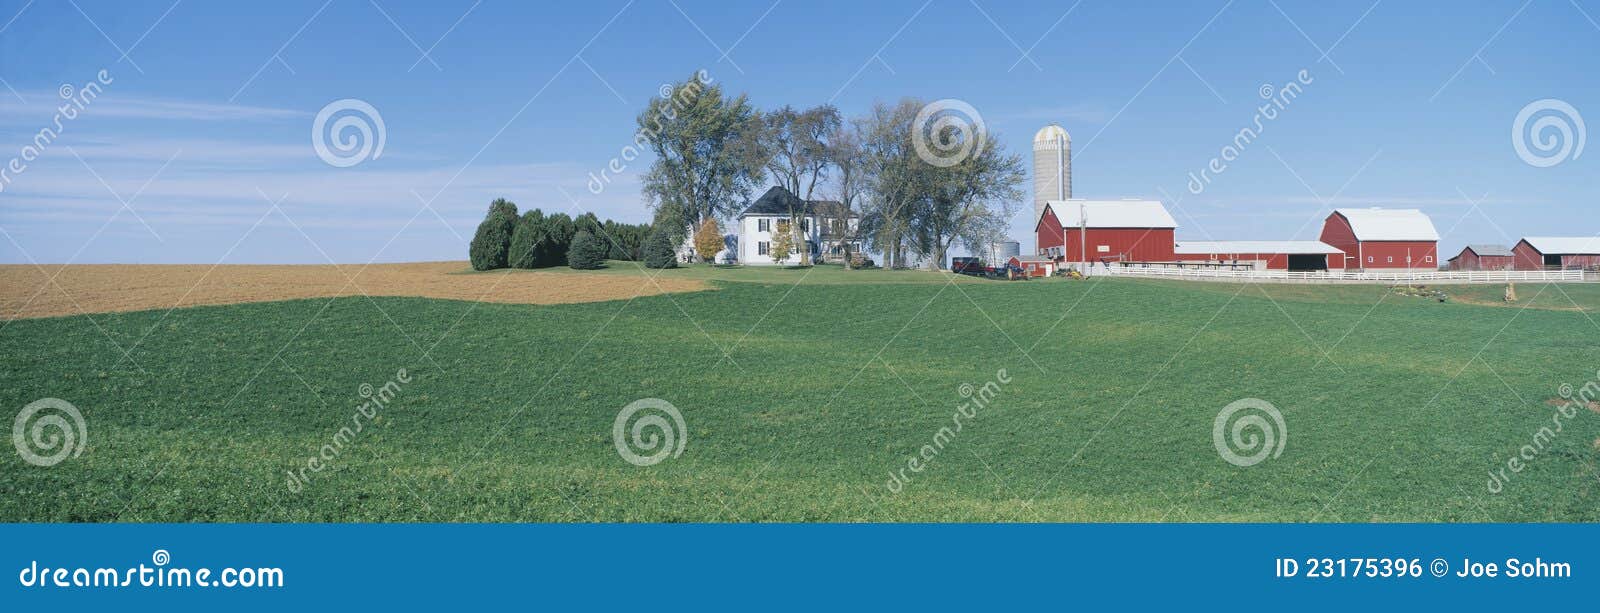 rolling farm fields